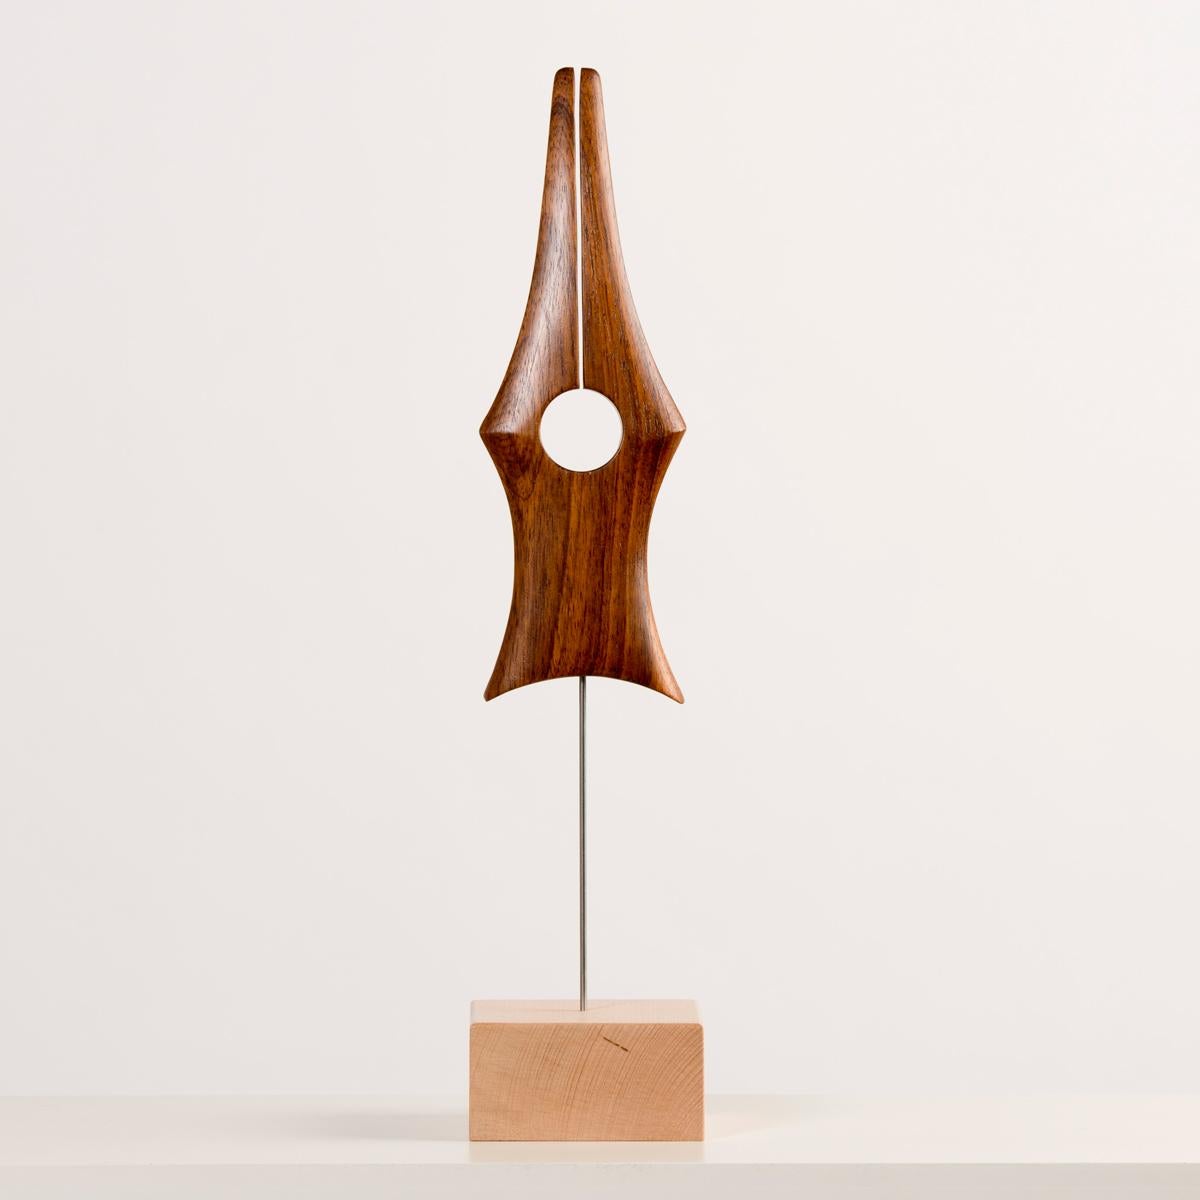 Antonis handwerklicher Hintergrund verleiht ihm die technische Qualität und Fähigkeit, die seine Arbeit von anderen abhebt, und sein künstlerischer Ansatz erforscht die ausdrucksstarken und ästhetischen Möglichkeiten von Holz. Antoni schafft seine